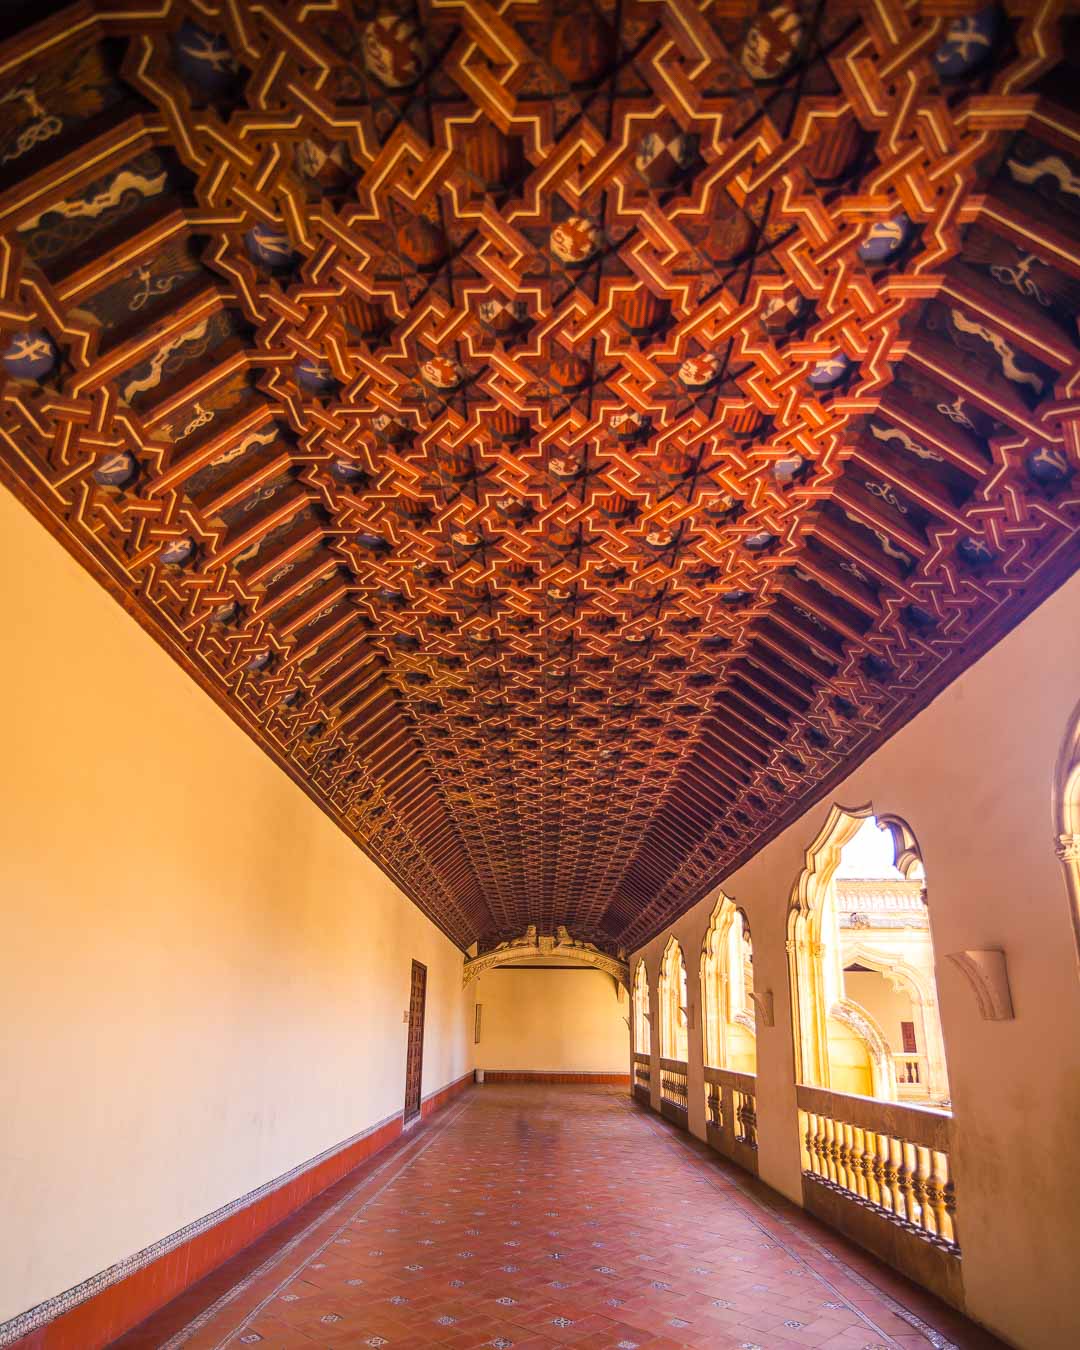 upper level of the cloister